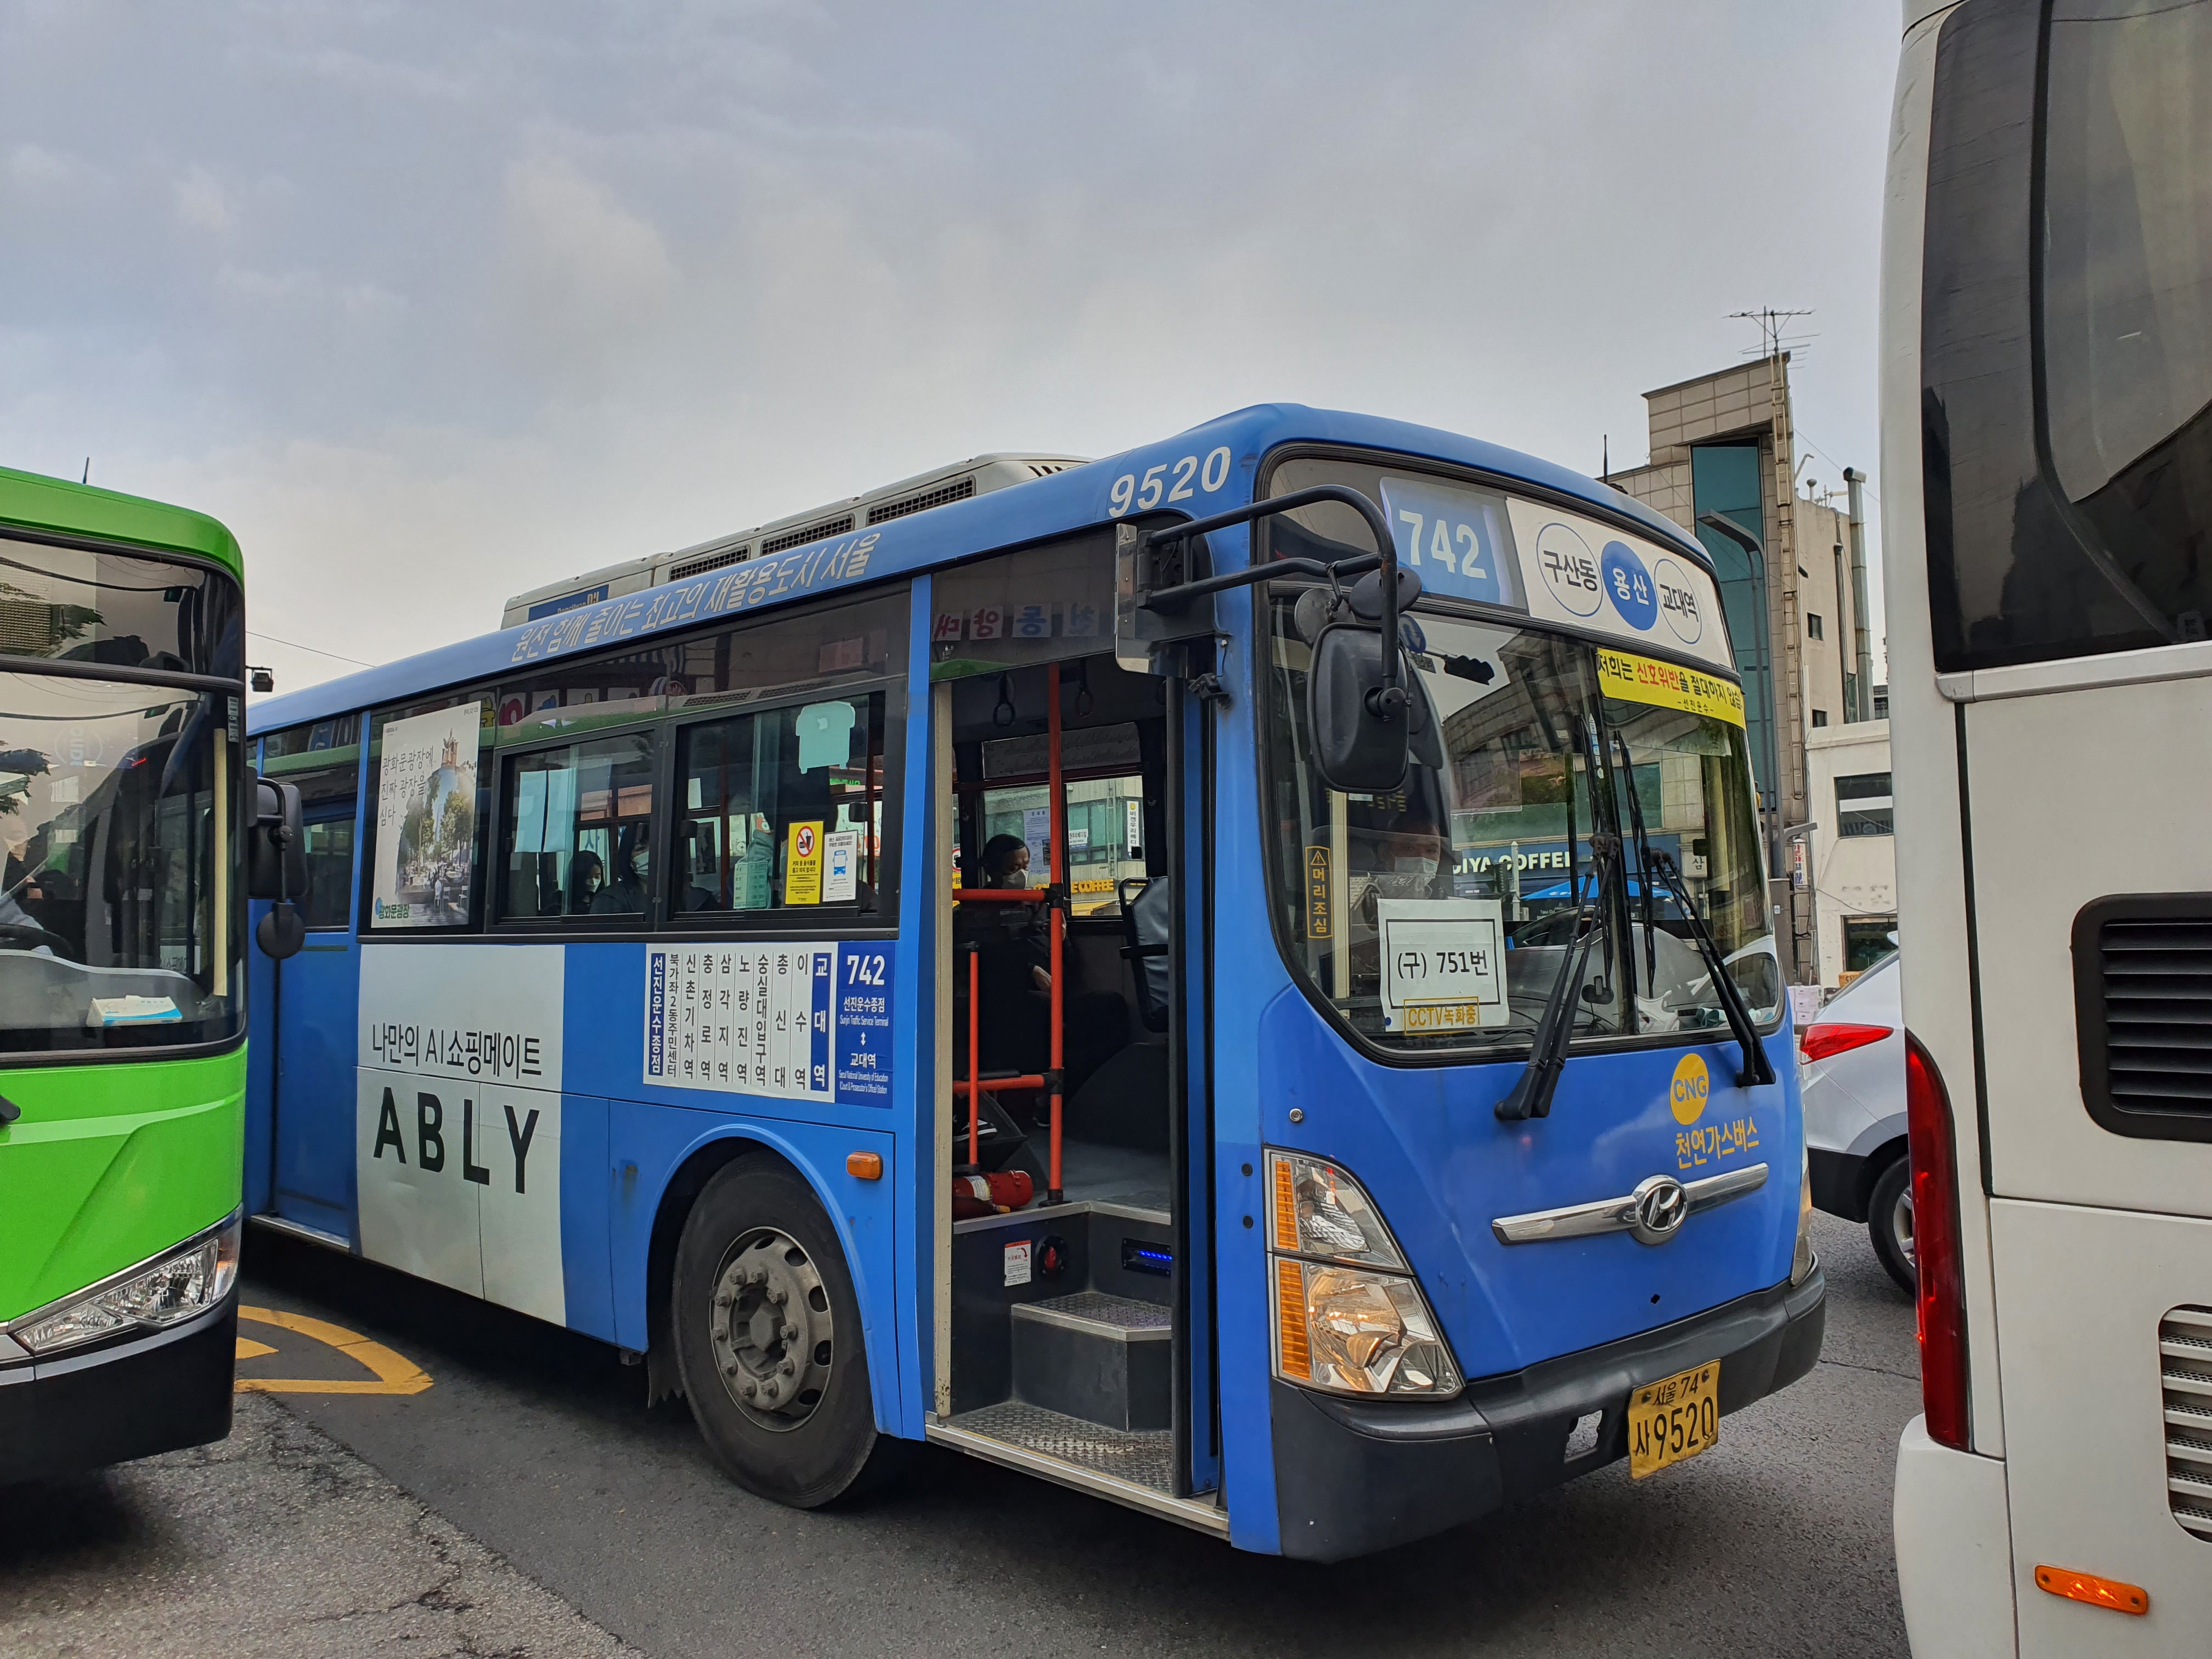 선진운수 김승환(49) 씨가 운행하는 742번 버스가 29일 오전 7시 26분 문을 열고 승객을 기다리고 있다. 최영권 기자 story@seoul.co.kr